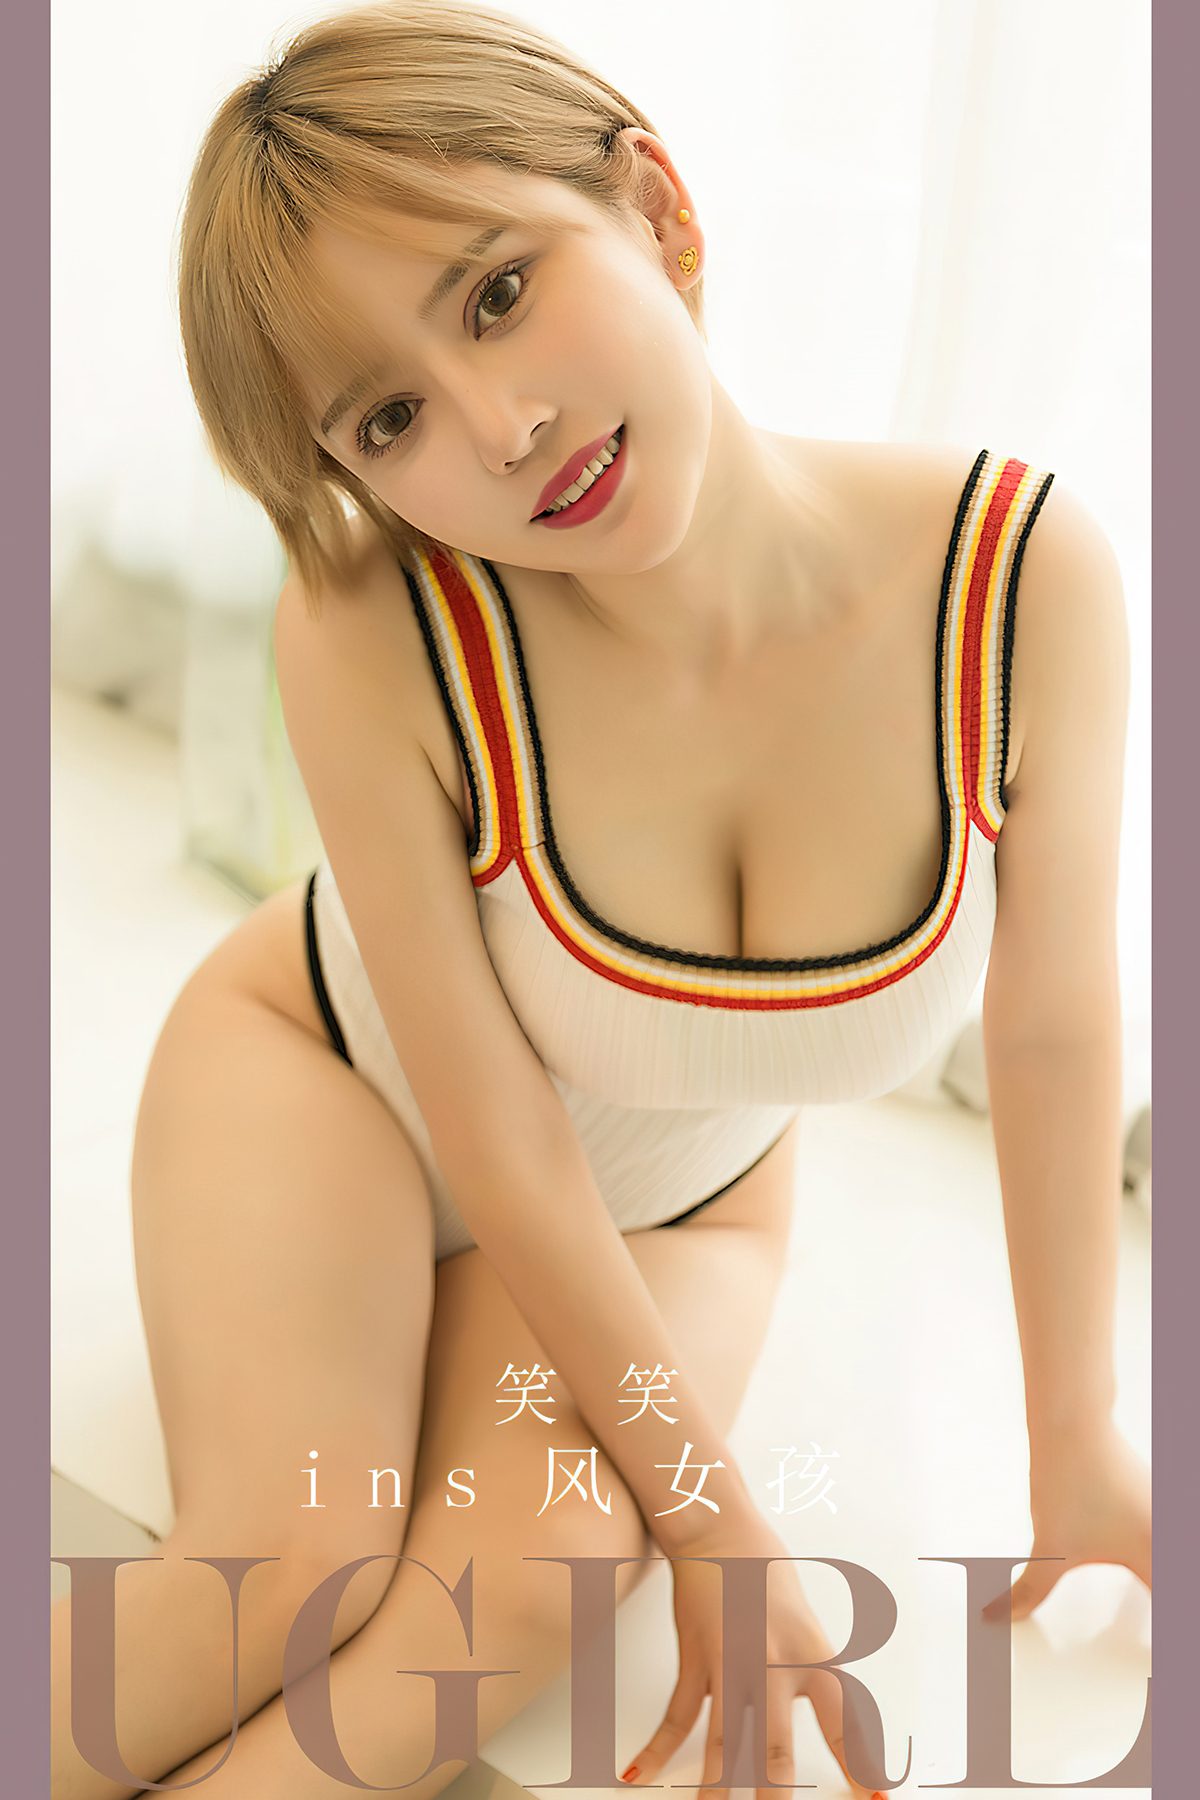 Ugirls App尤果圈 No 2700 Xiao Xiao 0001 7015944945.jpg